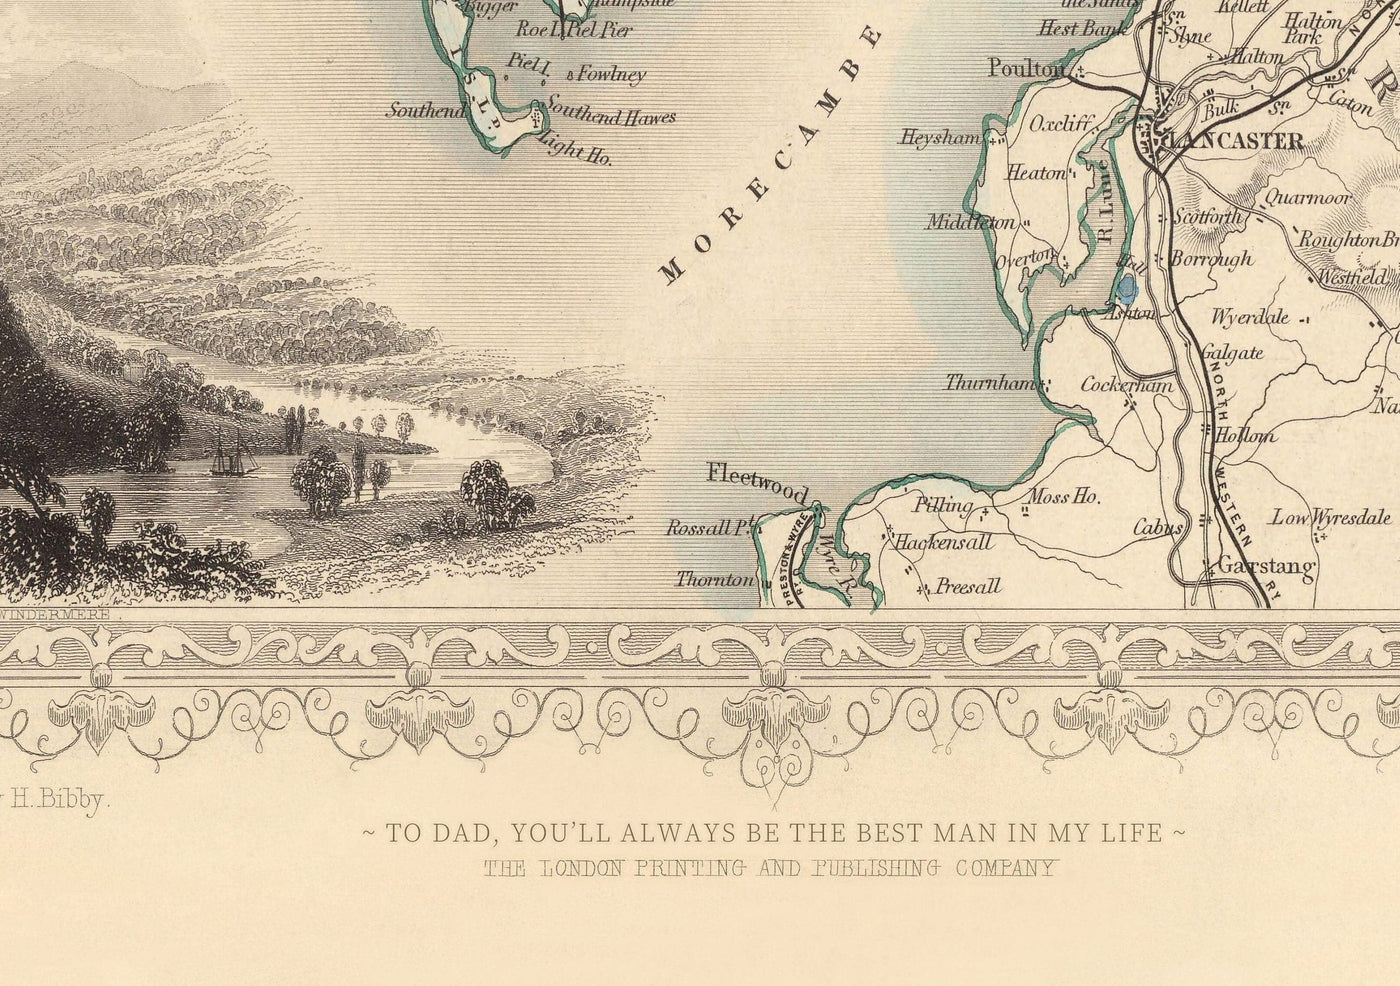 Ancienne carte d'Irlande, Eire 1851 par Tallis & Rapkin - Victorian Handcoloured Provinces, Villes, Dublin, Chemins de fer